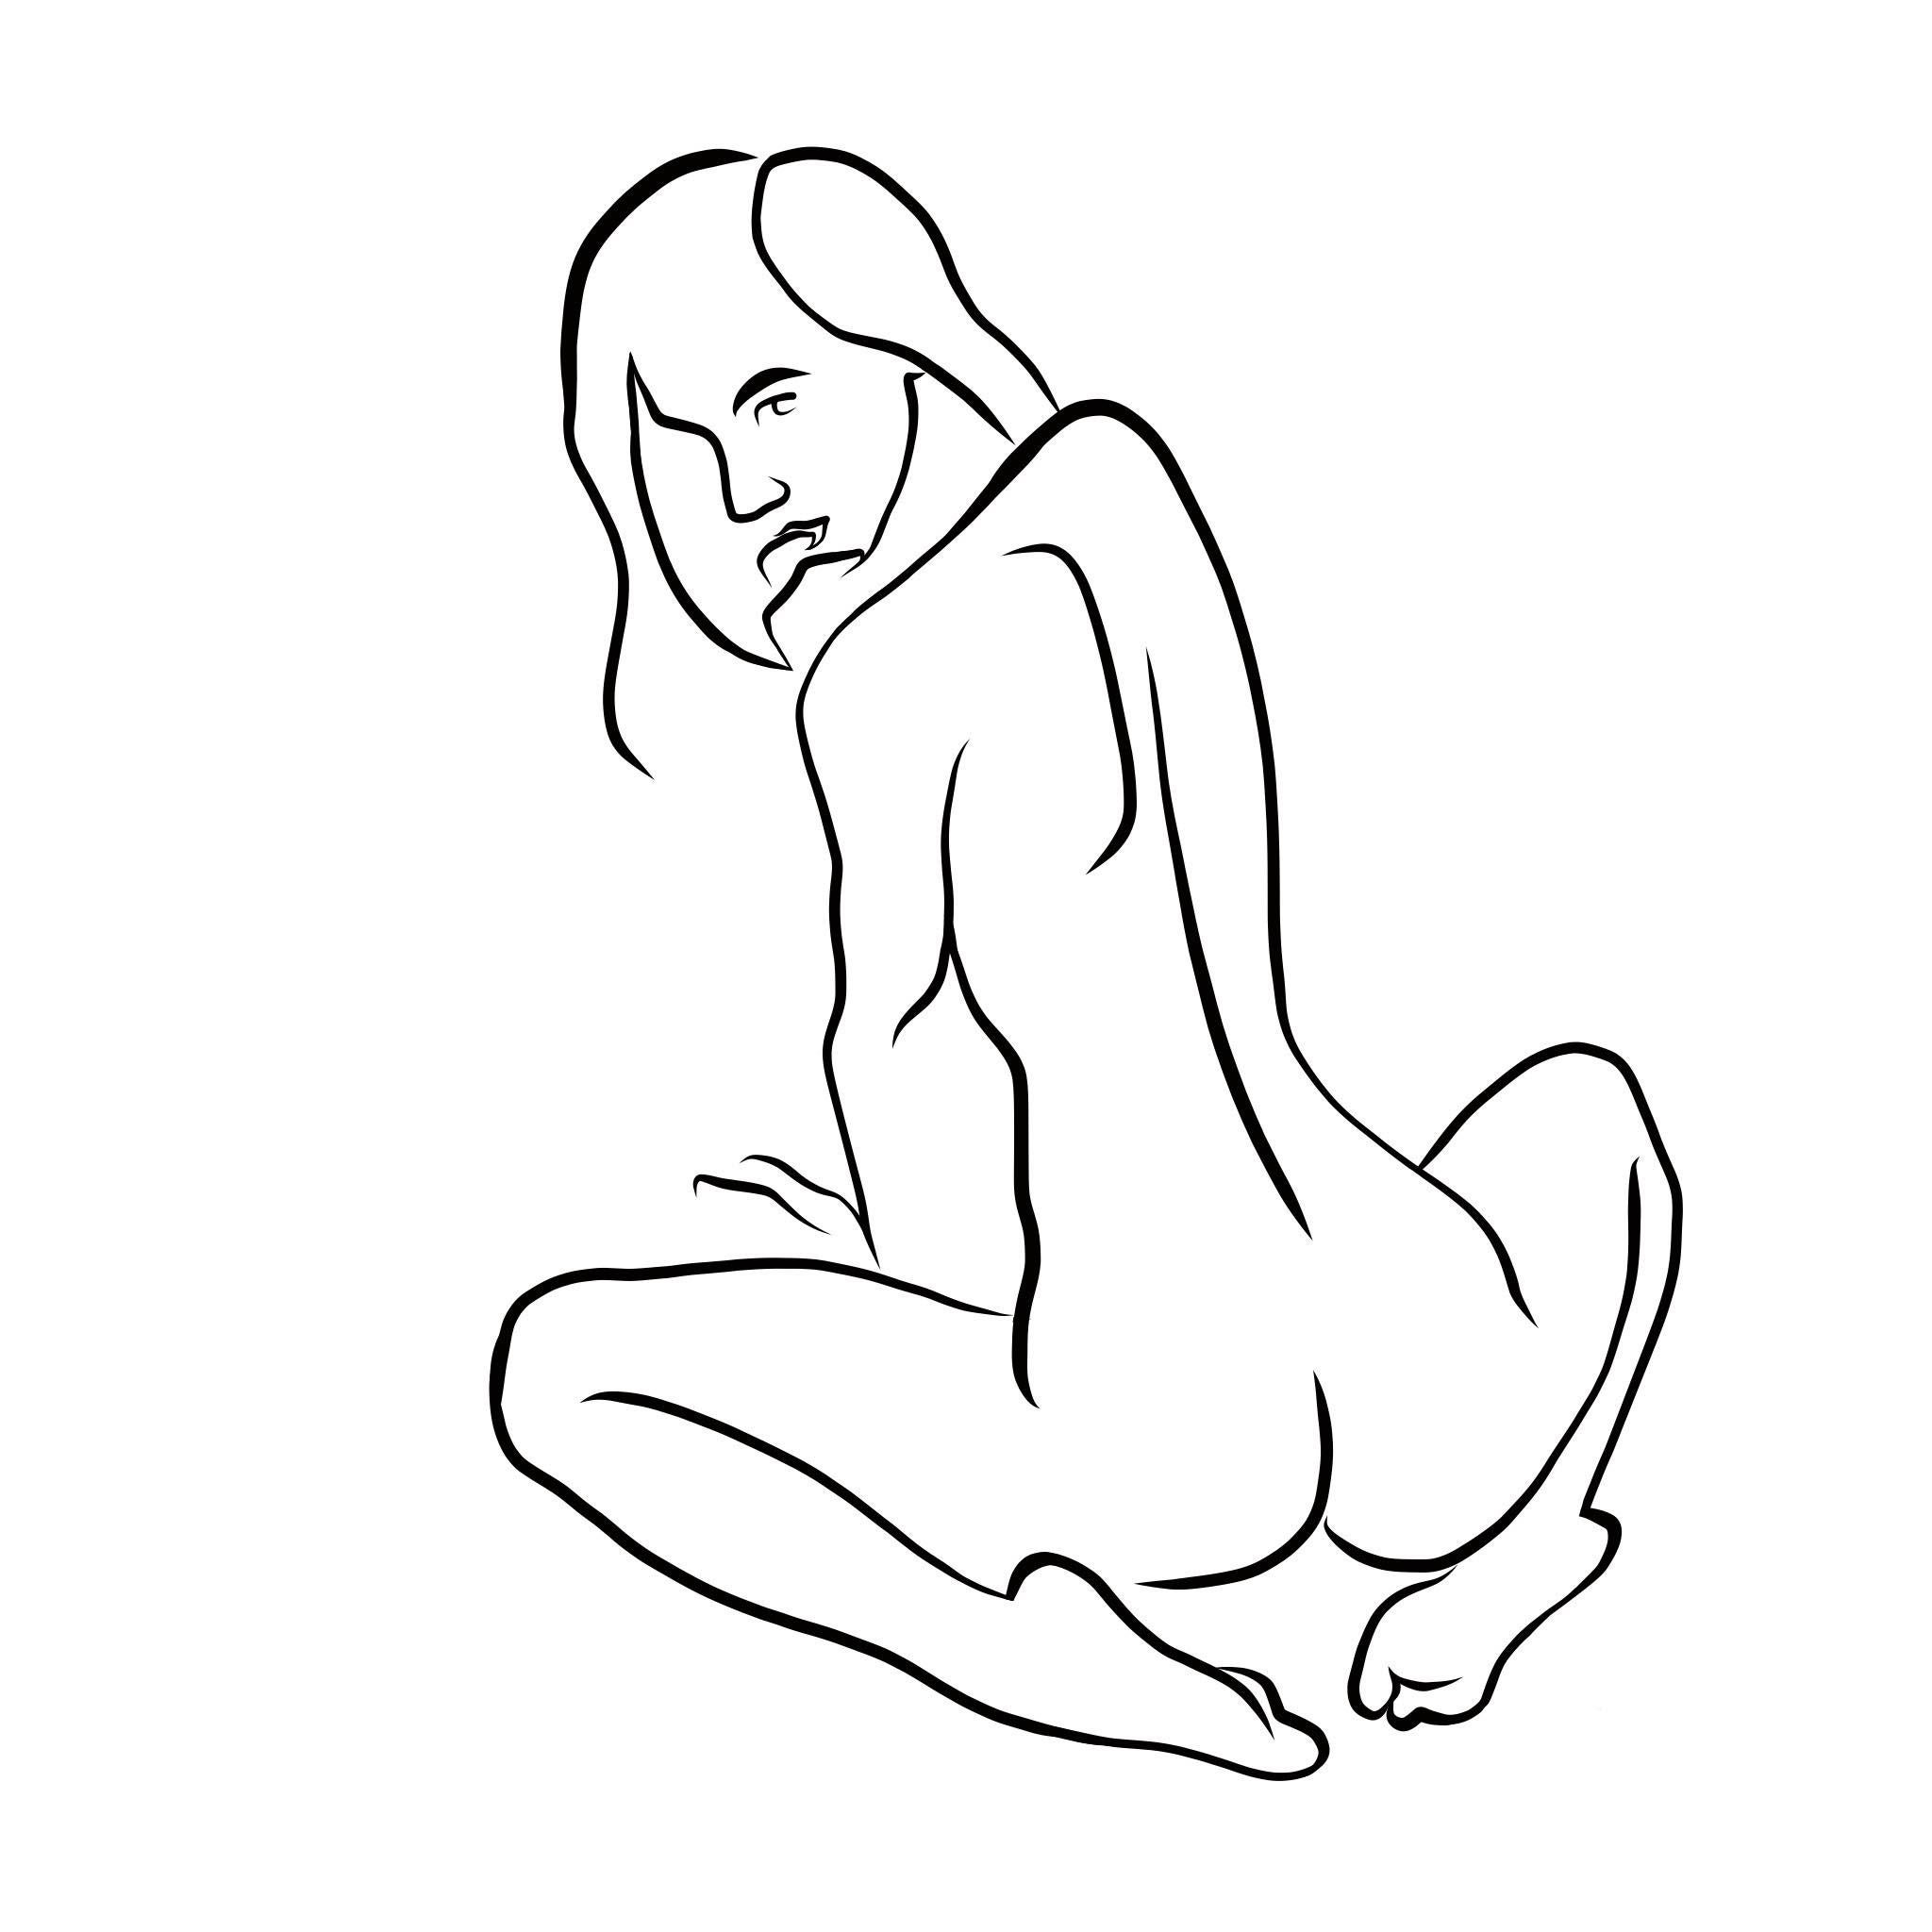 Michael Binkley Nude Print - Haiku #35, 1/50 - Digital Vector Drawing Seated Female Nude Woman Figure Looking